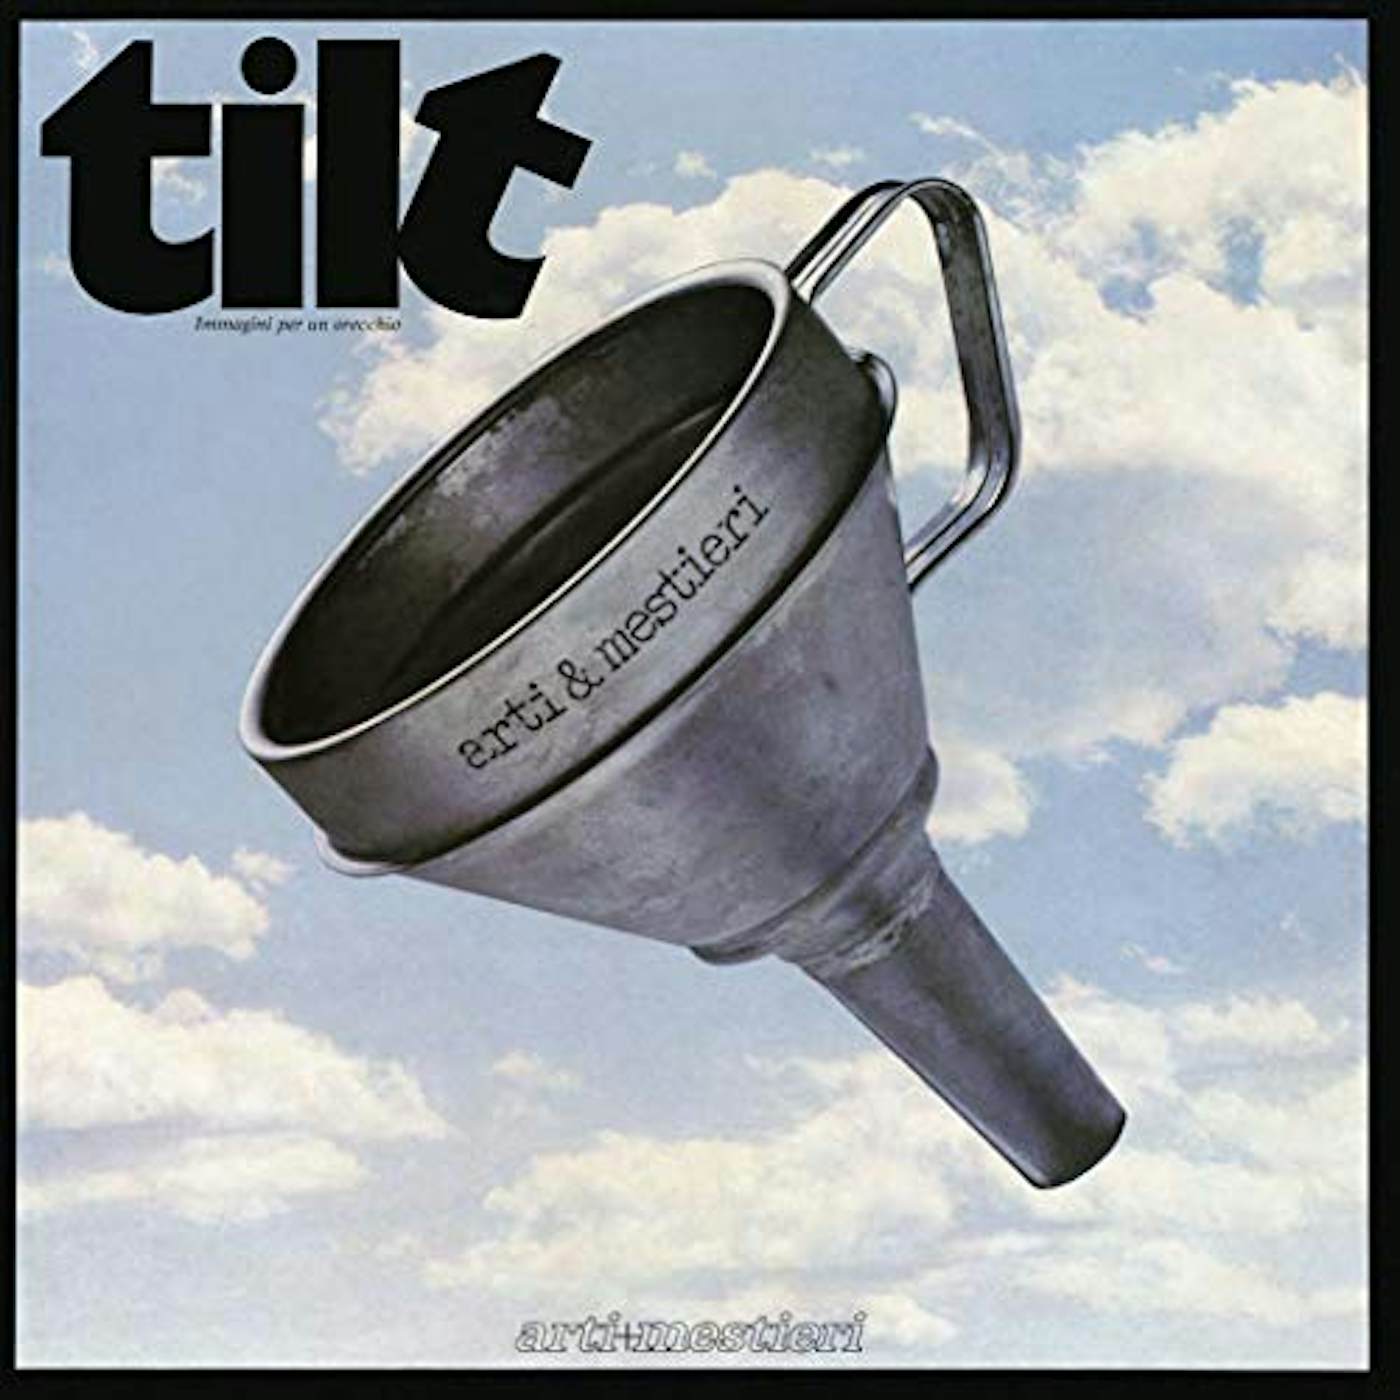 Arti & Mestieri TILT (IMMAGINI PER UN ORECCHIO) CD